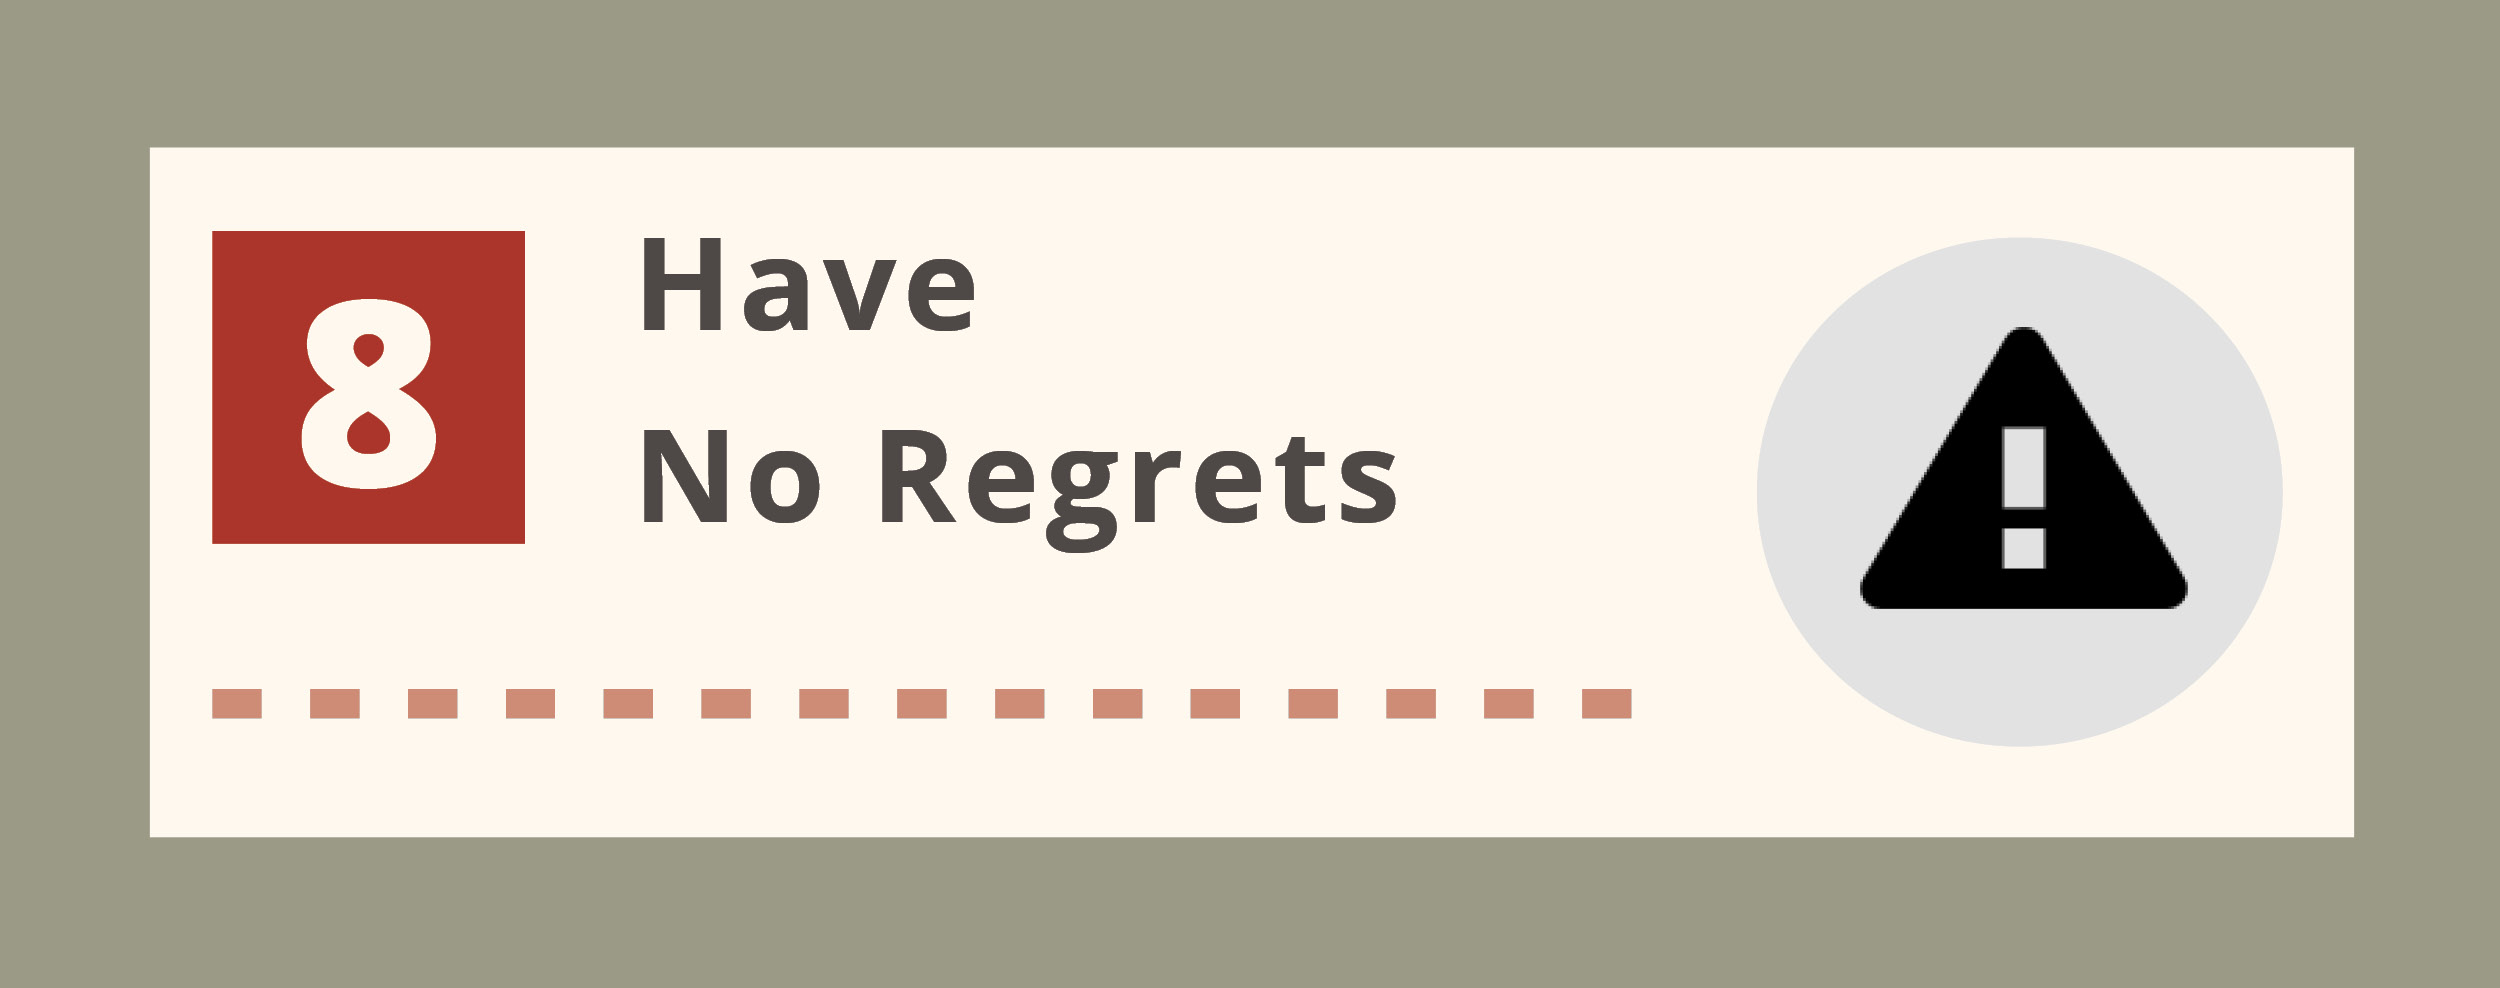 Have no regrets